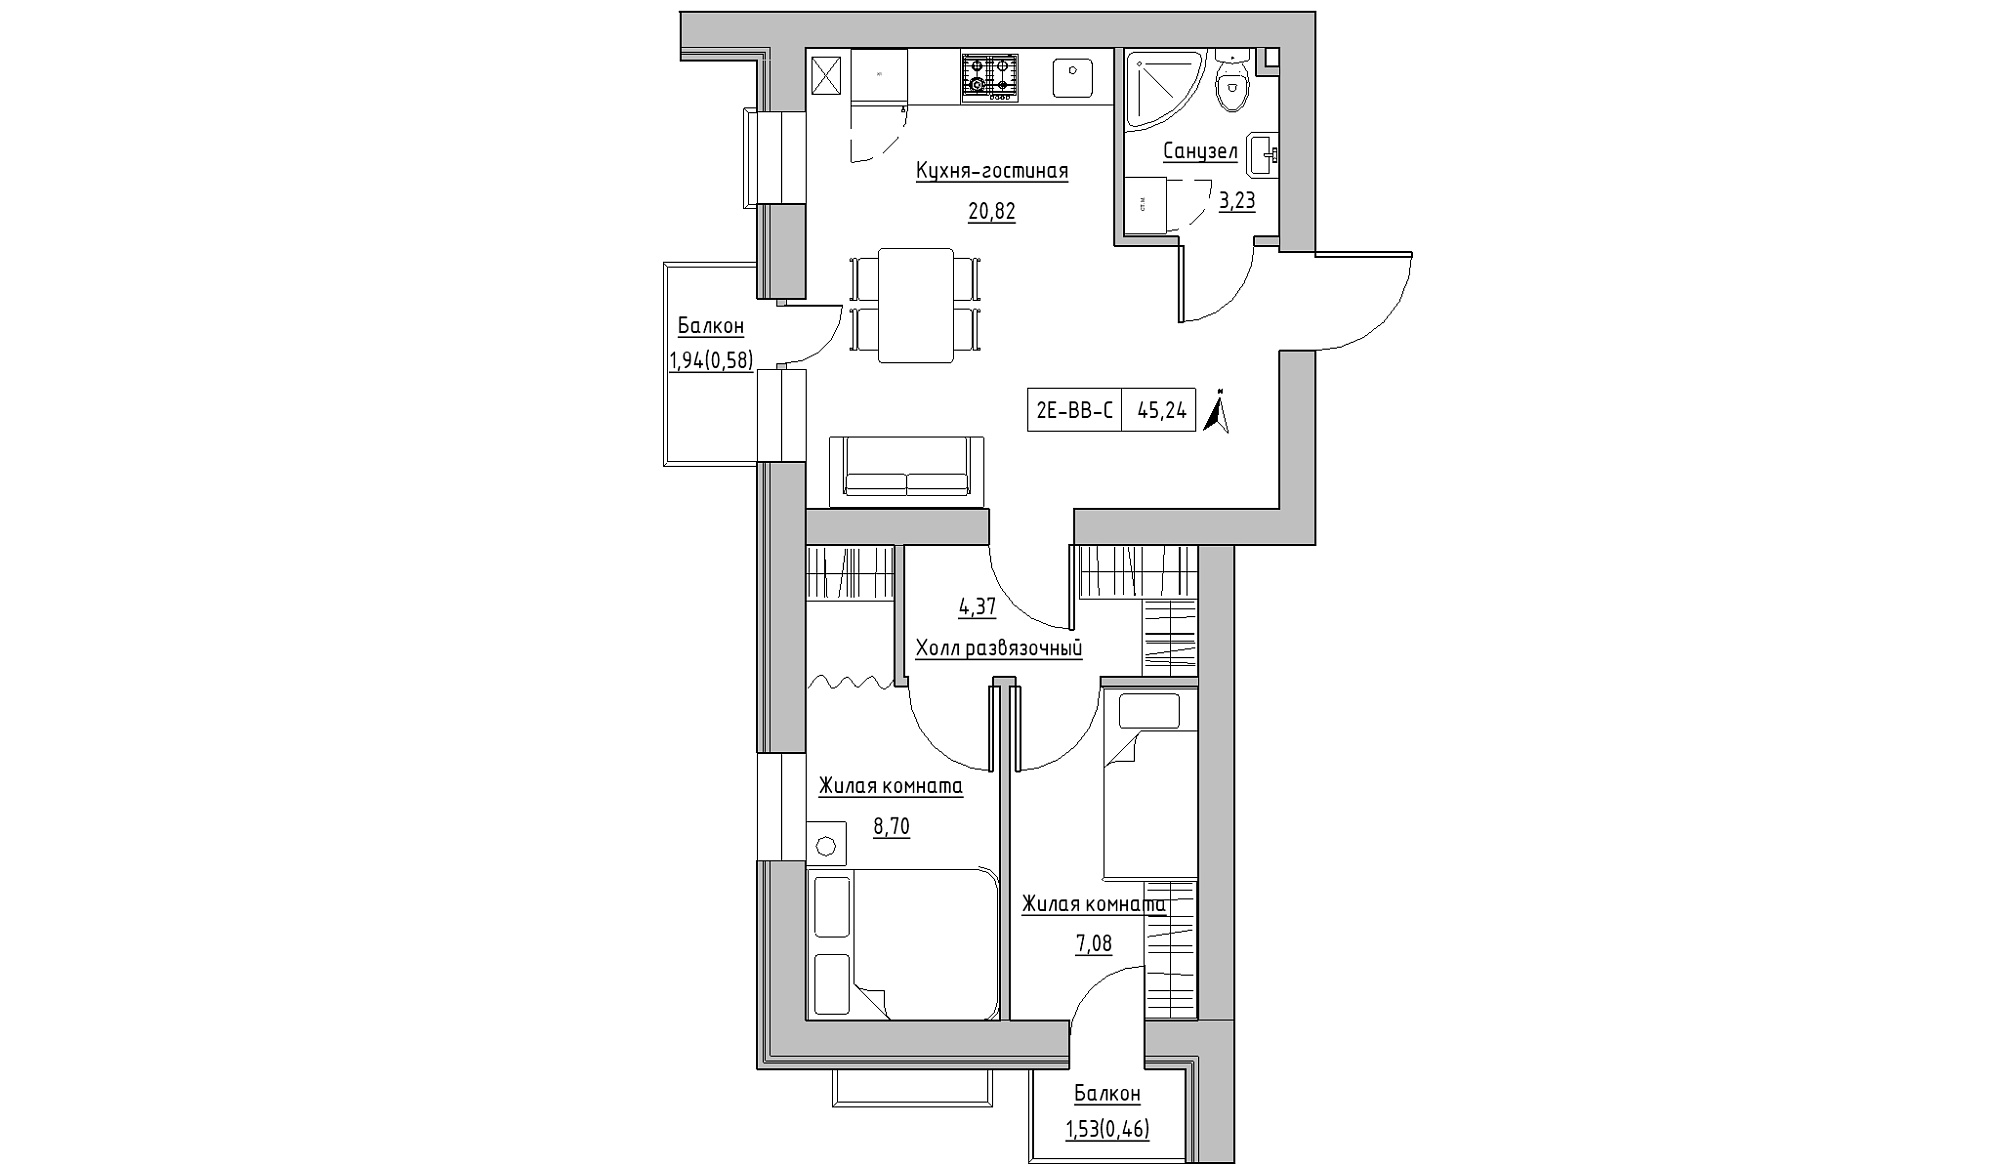 Планування 2-к квартира площею 45.24м2, KS-016-05/0011.